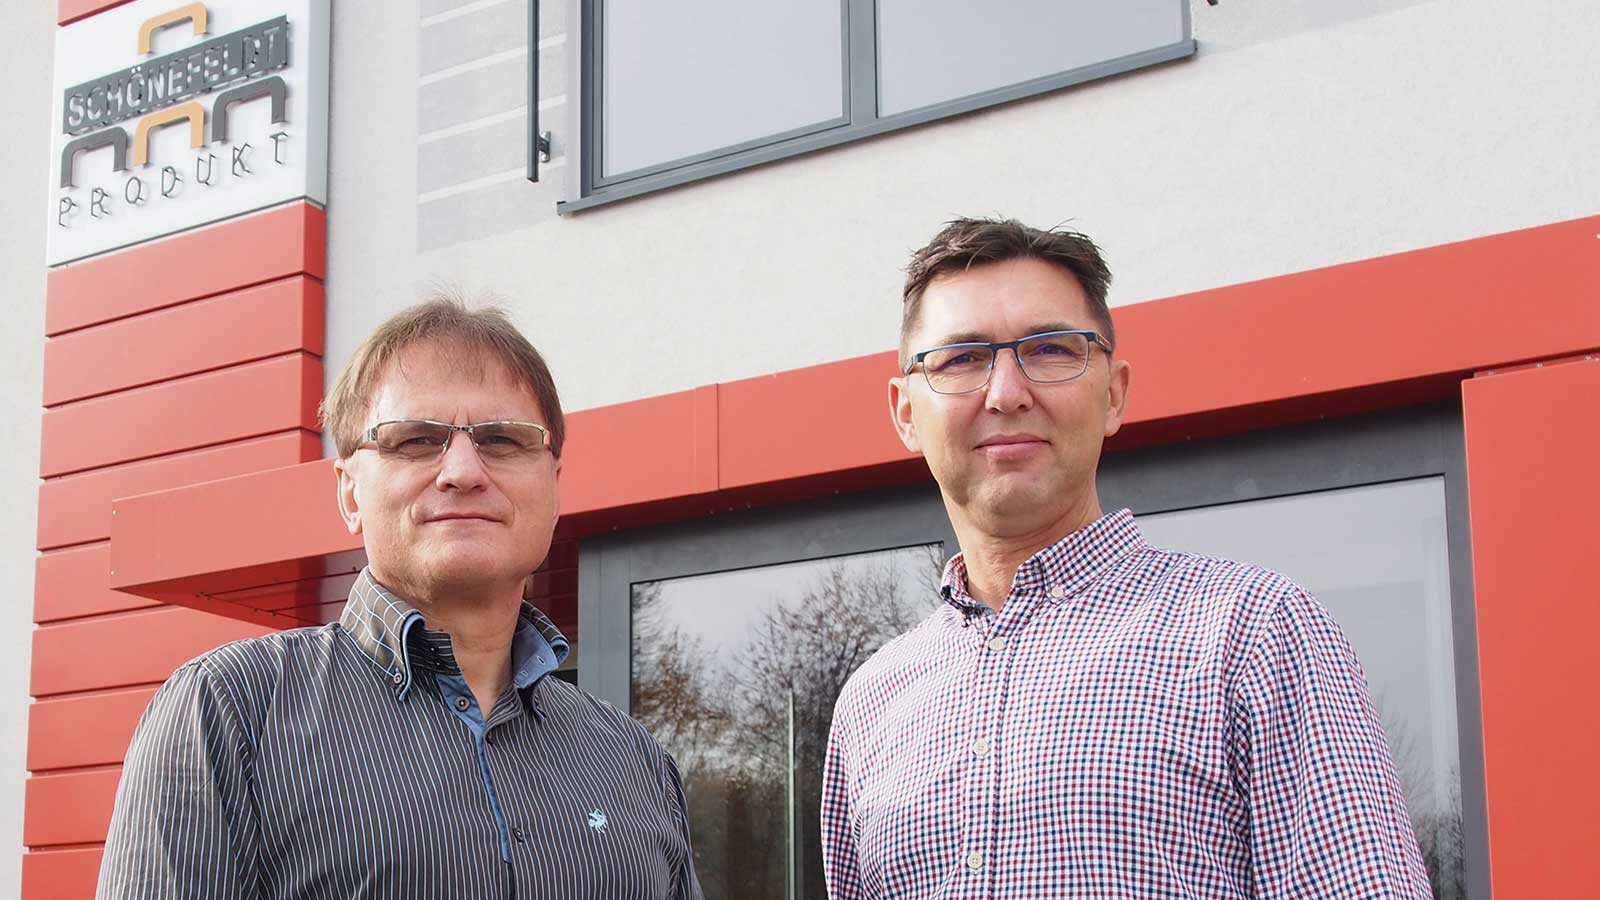 Андреас Бальнувайт (слева) и Андреас Ватцингер добились превращения своего предприятия в высокопроизводительную производственную компанию, специализирующуюся на обработке плитных материалов.